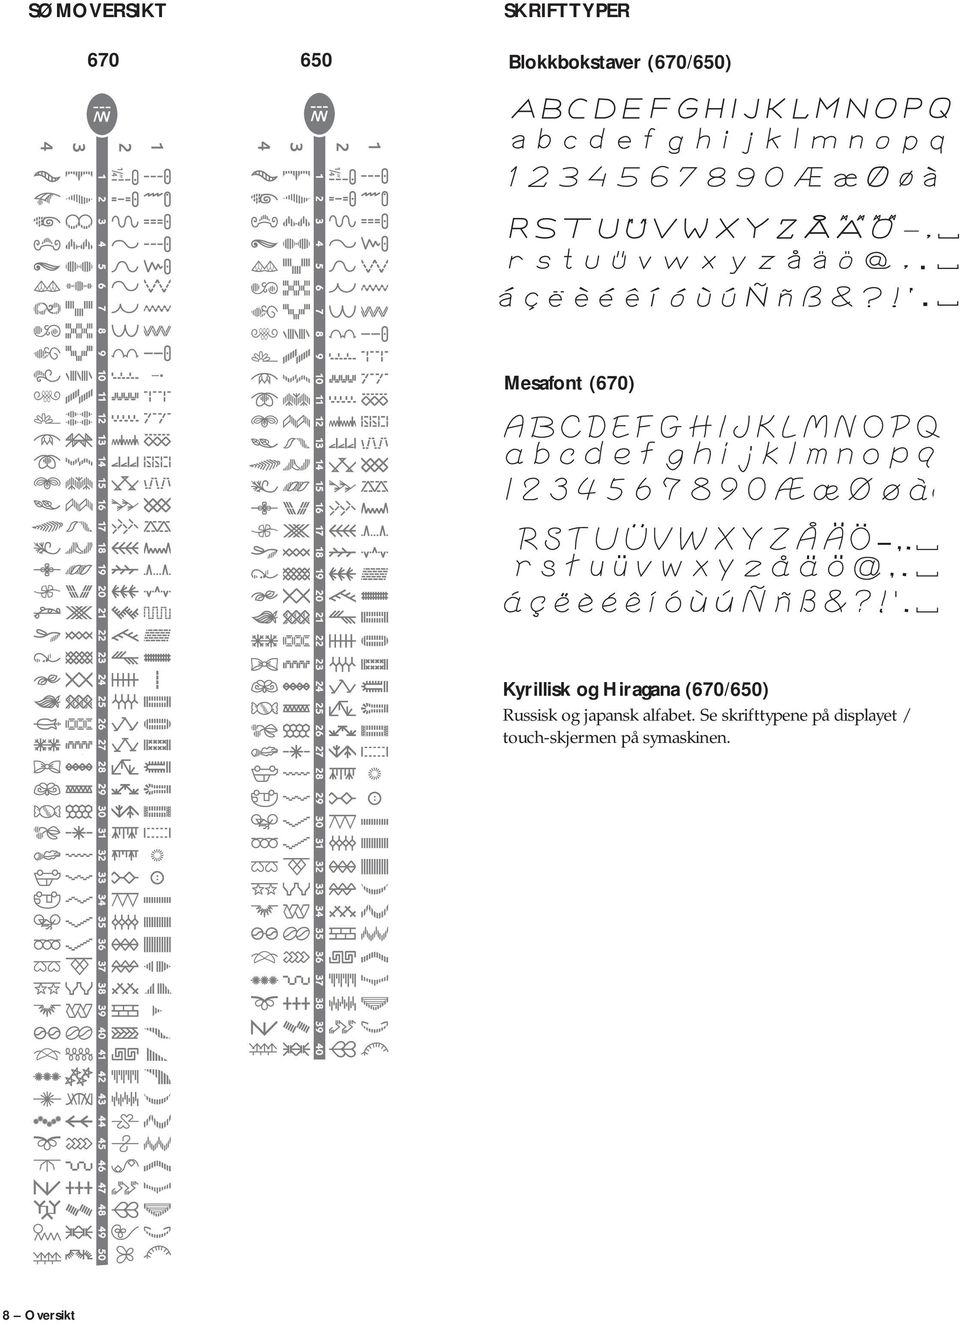 (670/650) Russisk og japansk alfabet.